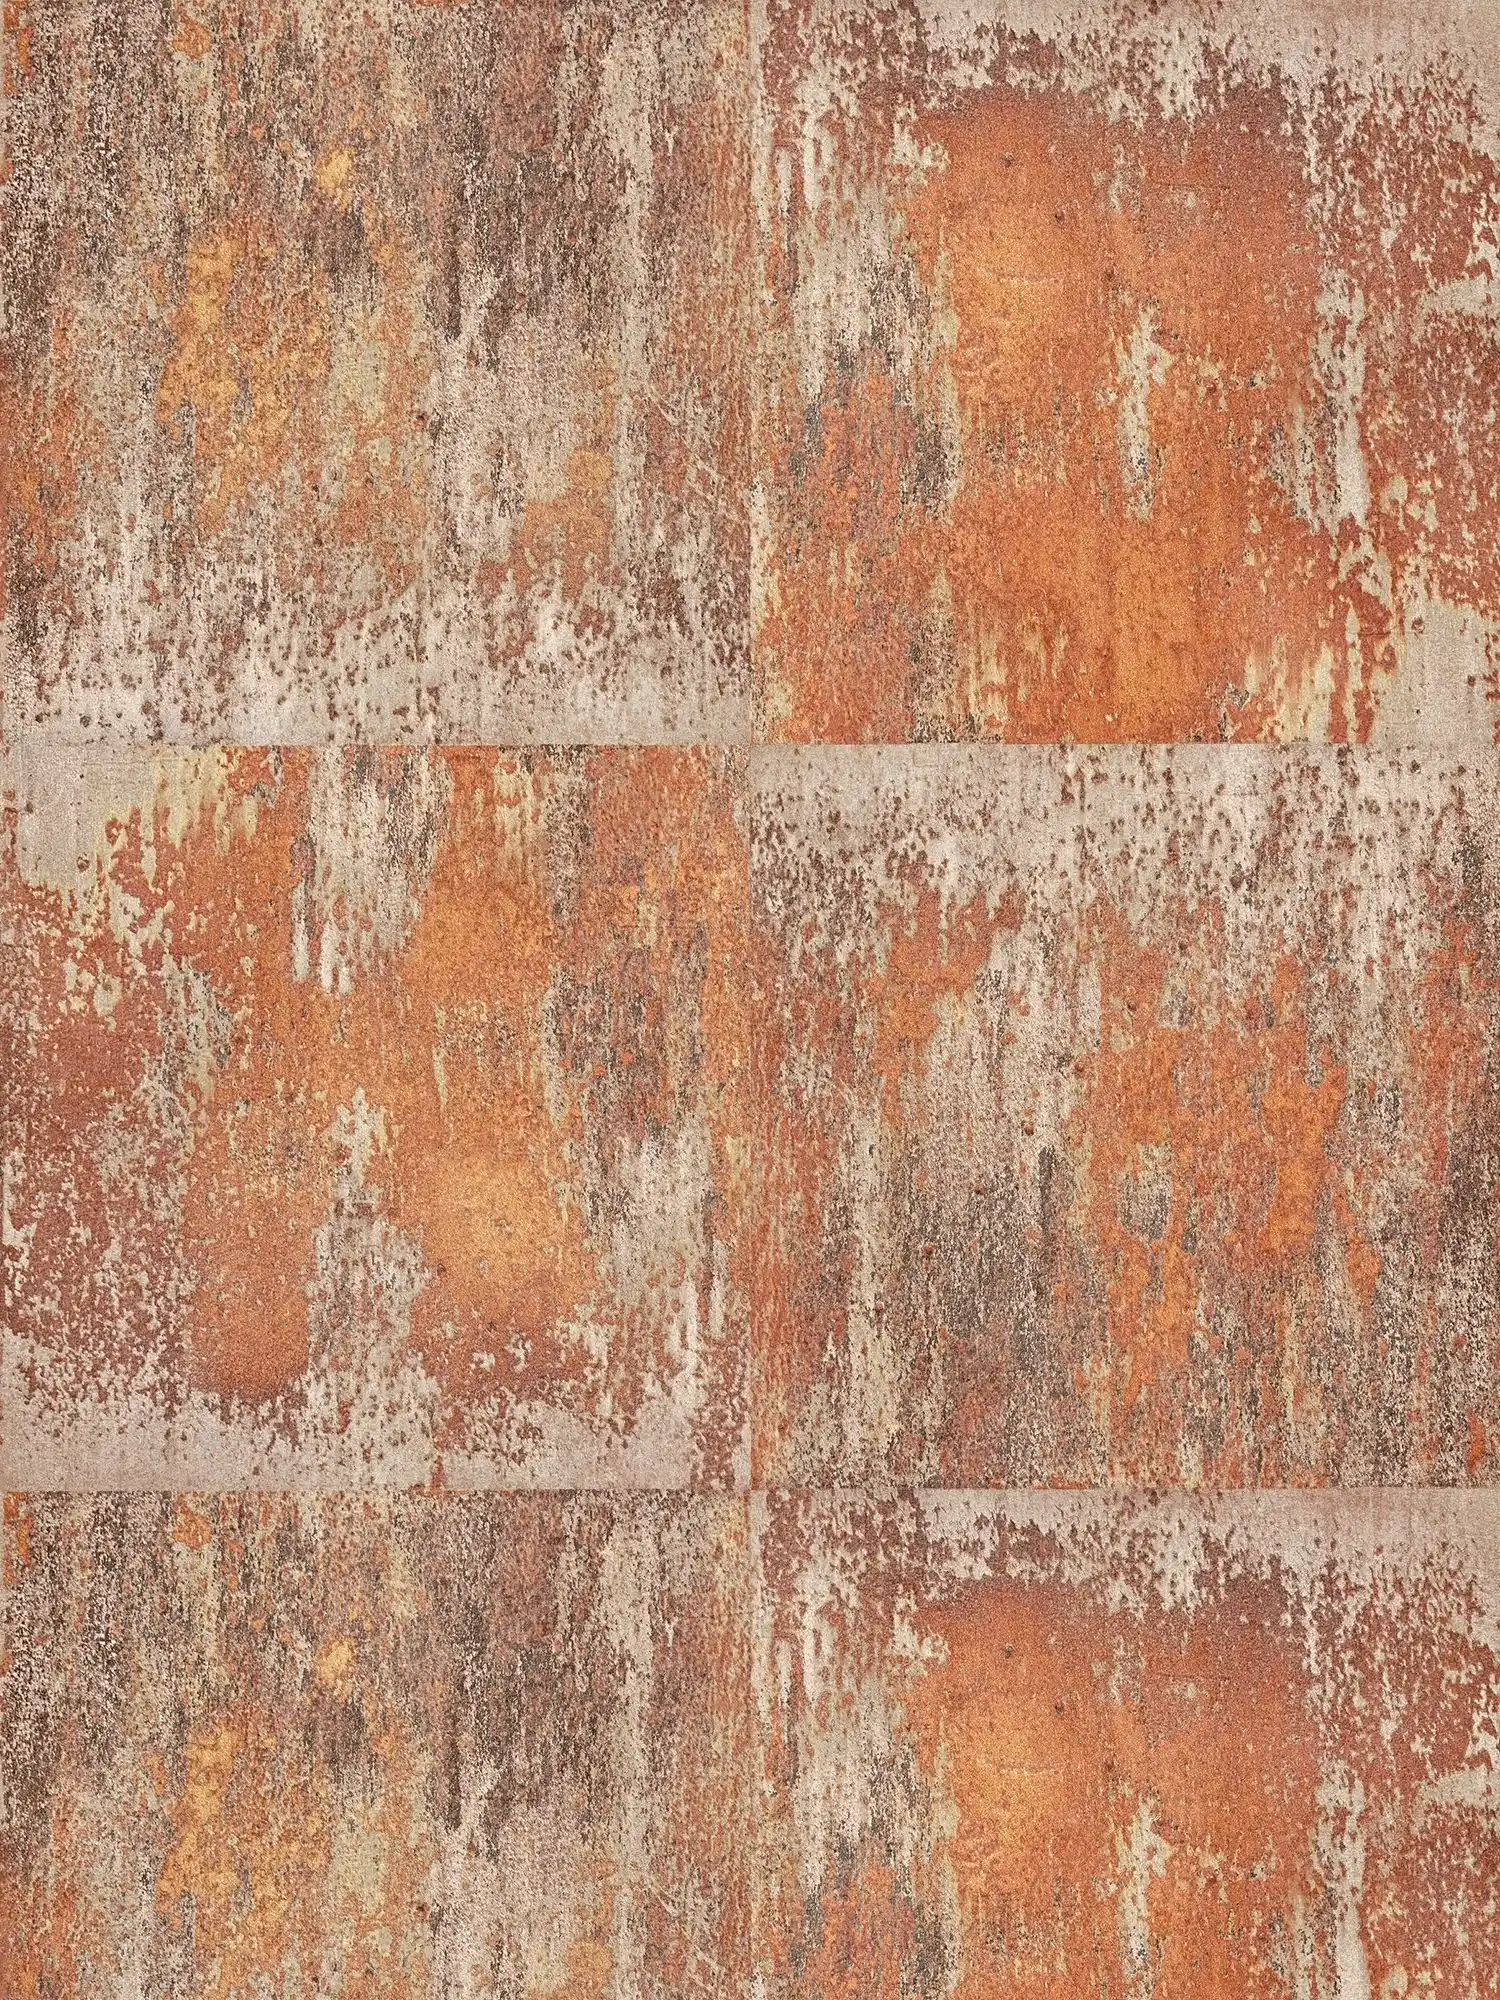         Vliestapete Patina-Design mit Rost und Kupfereffekten – Orange, Braun, Kupfer
    